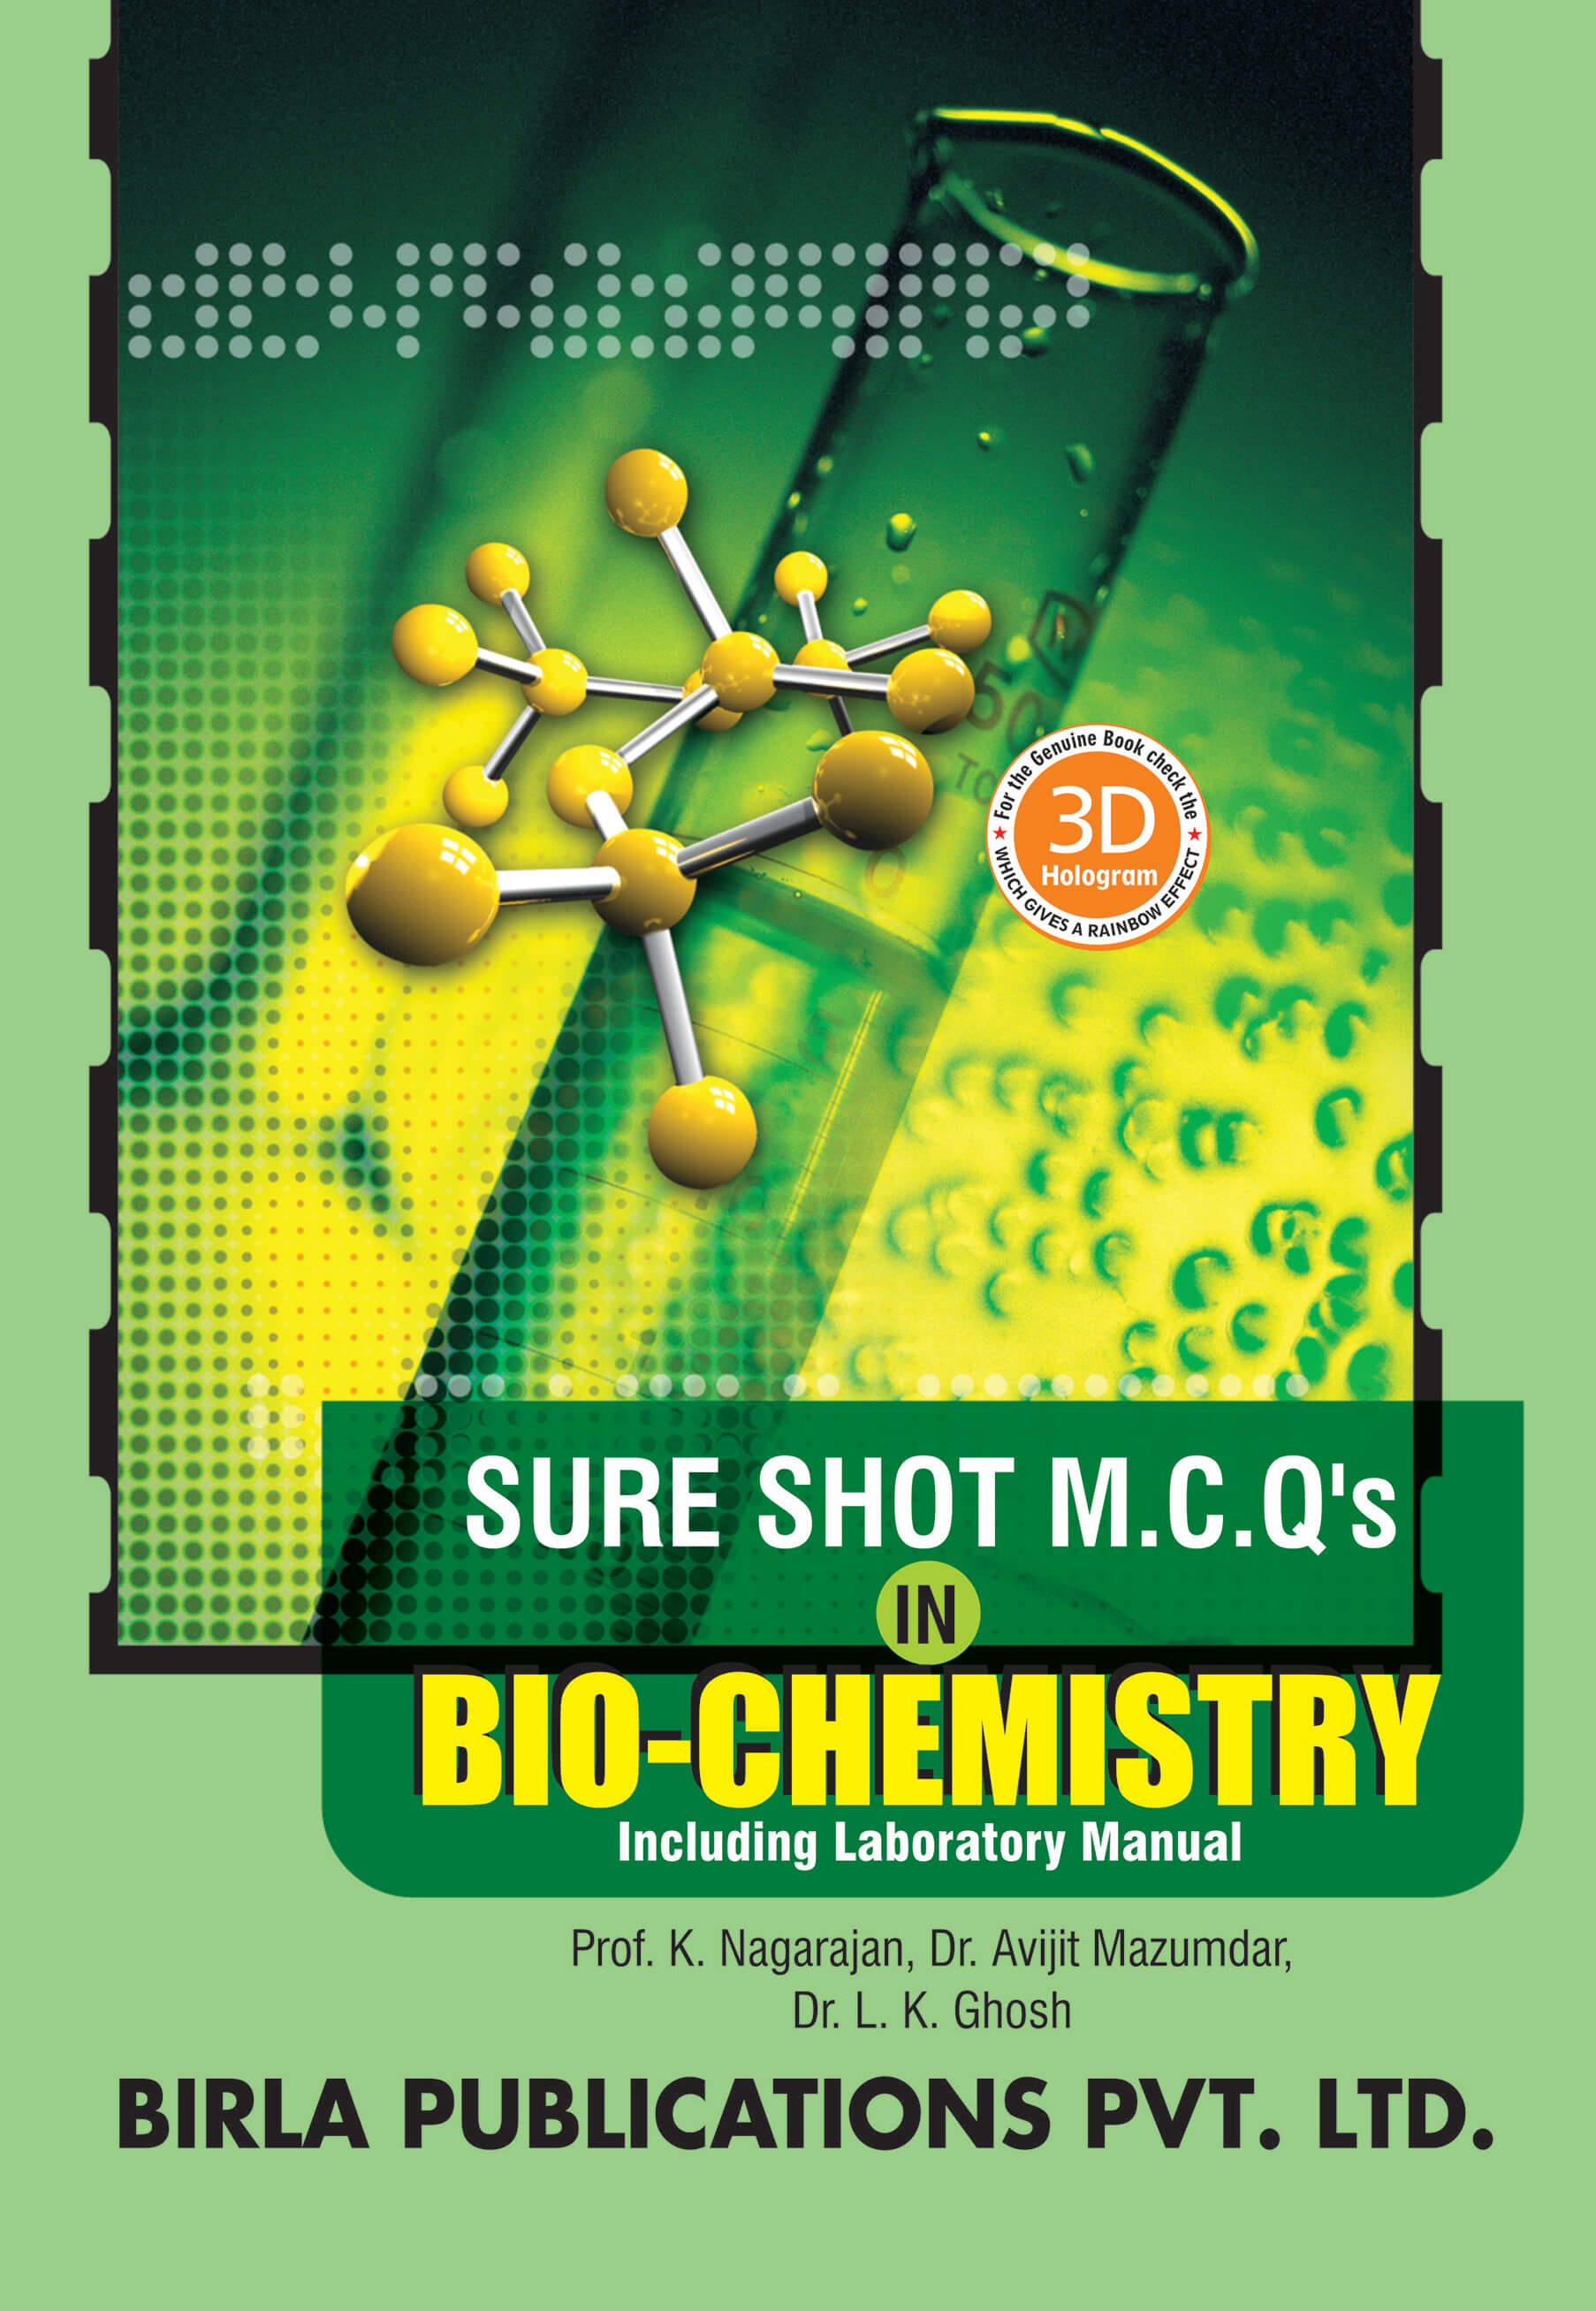 M.C.Q. IN BIO-CHEMISTRY